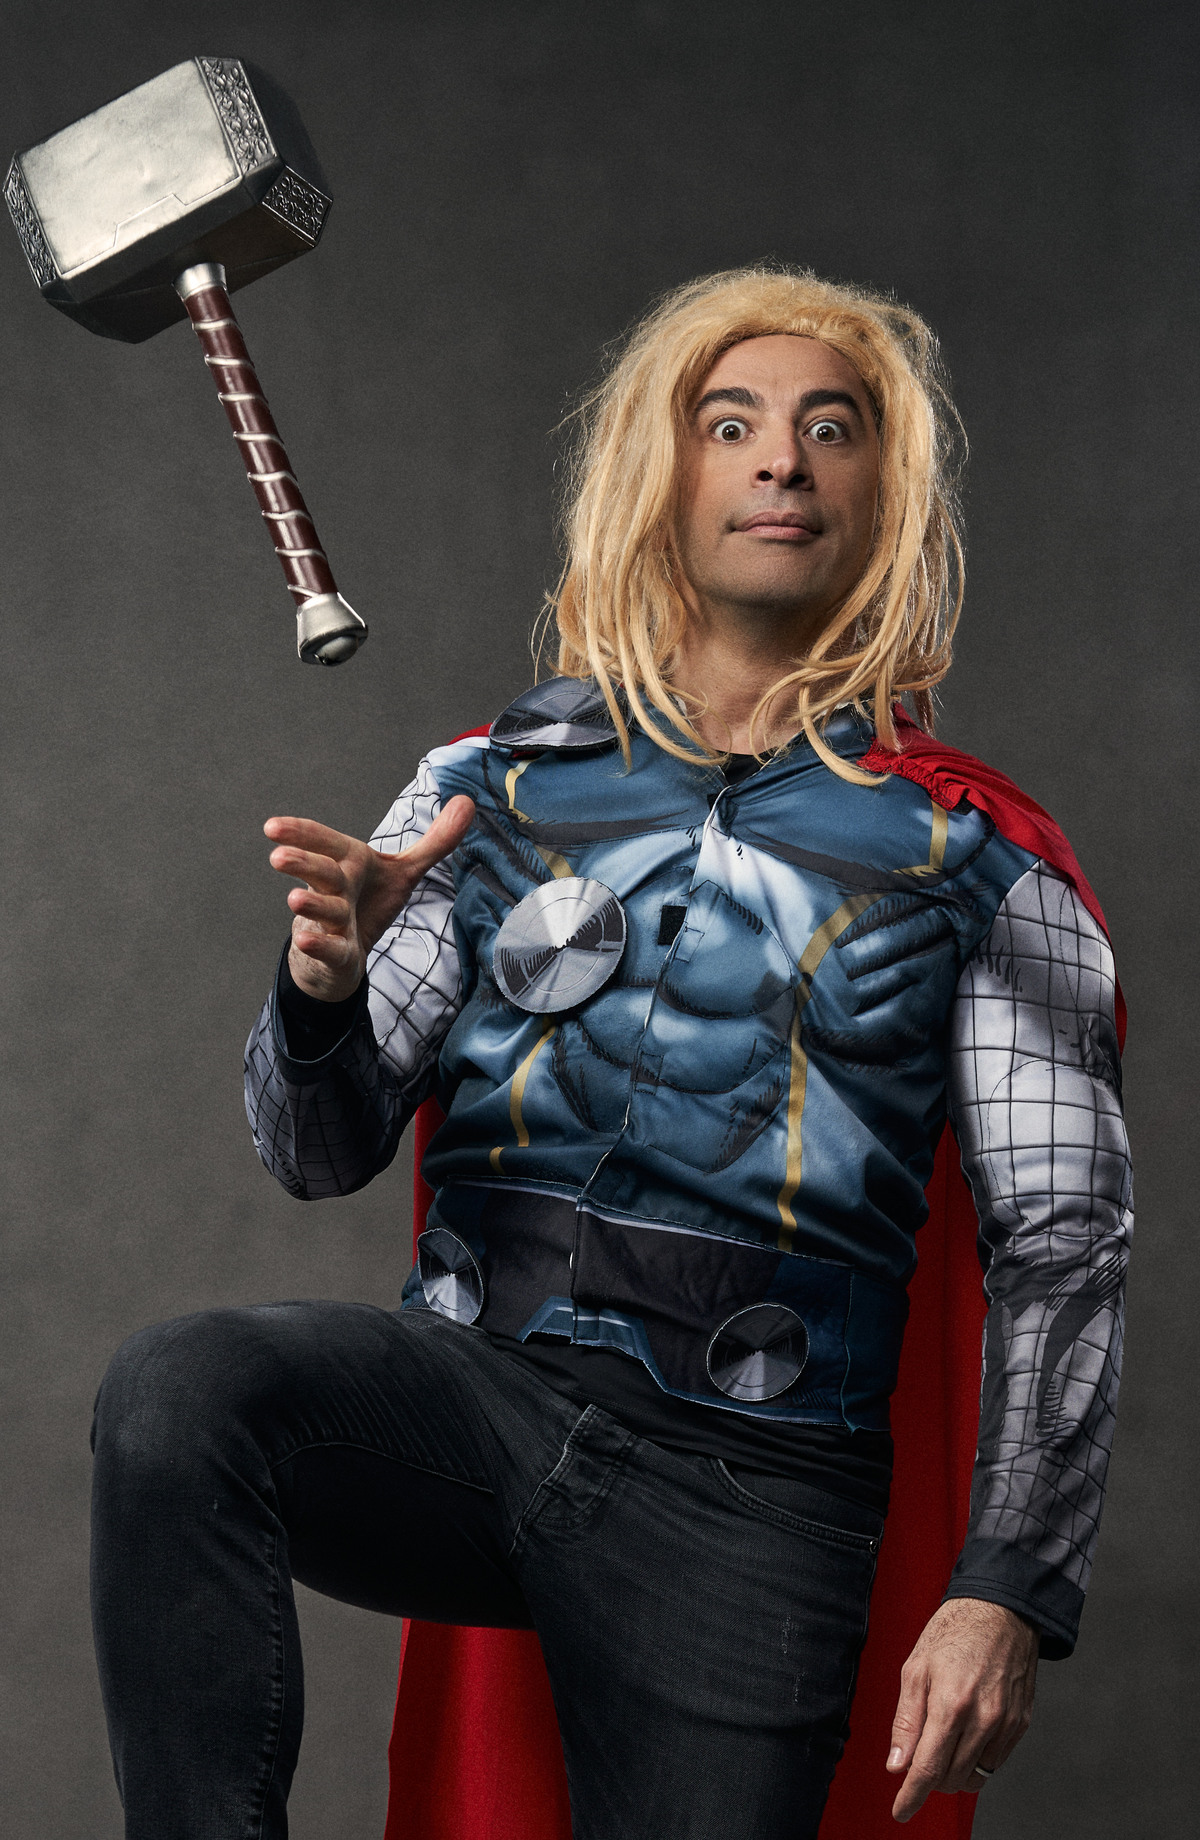 Bülent Ceylan in einem Superheldenkostüm, das dem von Thor ähnelt, mit einem Hammer, der so aussieht als würde er in der Luft schweben. Bülent Ceylan hat einen überraschten Gesichtsausdruck und blonde, zerzauste Haare.